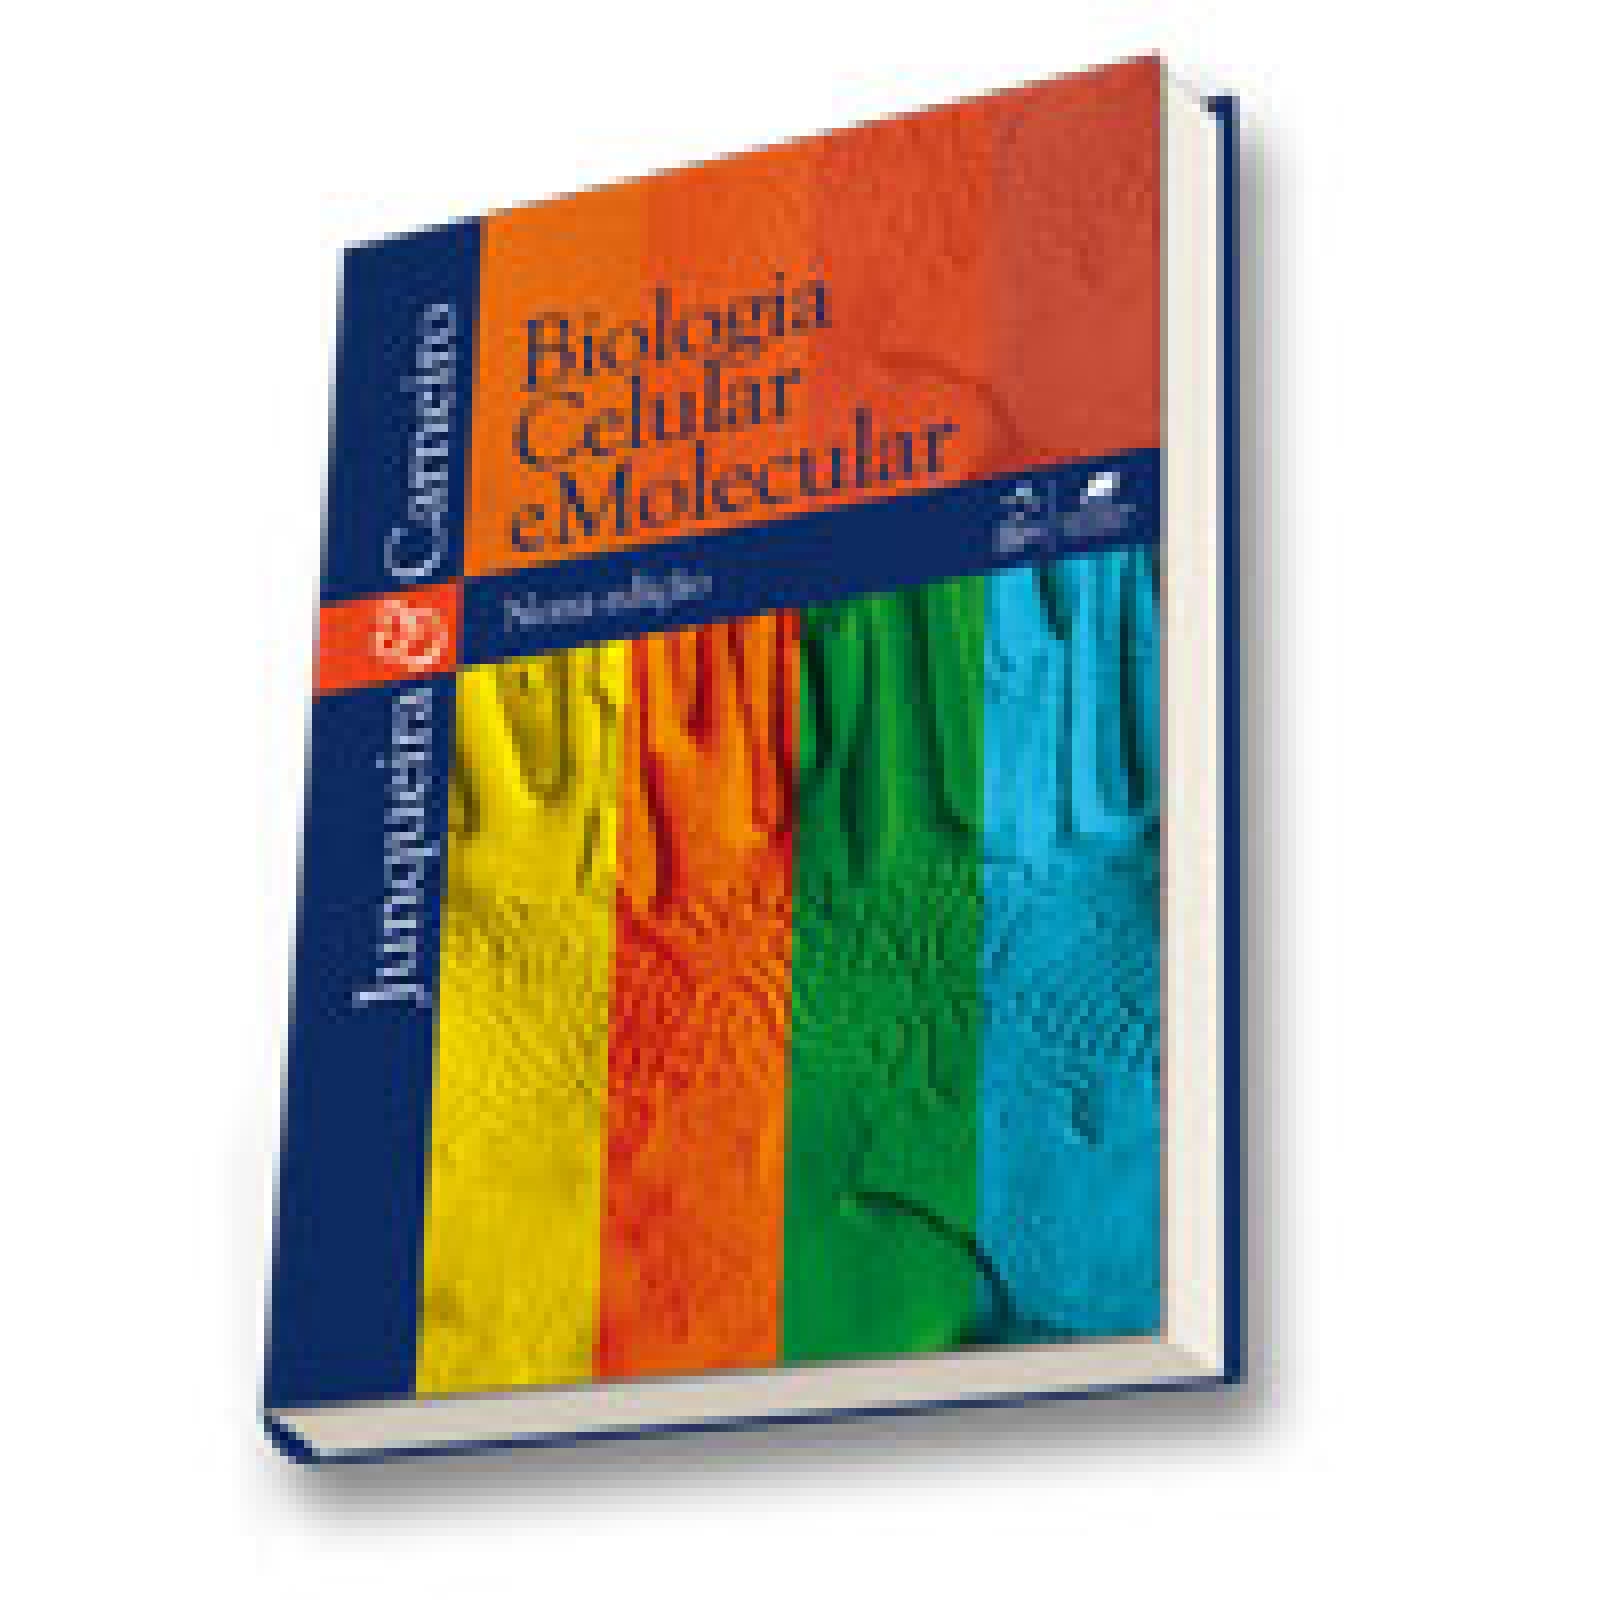  Biologia Celular E Molecular (Em Portuguese do Brasil):  9788527720786: Luiz Carlos Uchôa Junqueira: Books